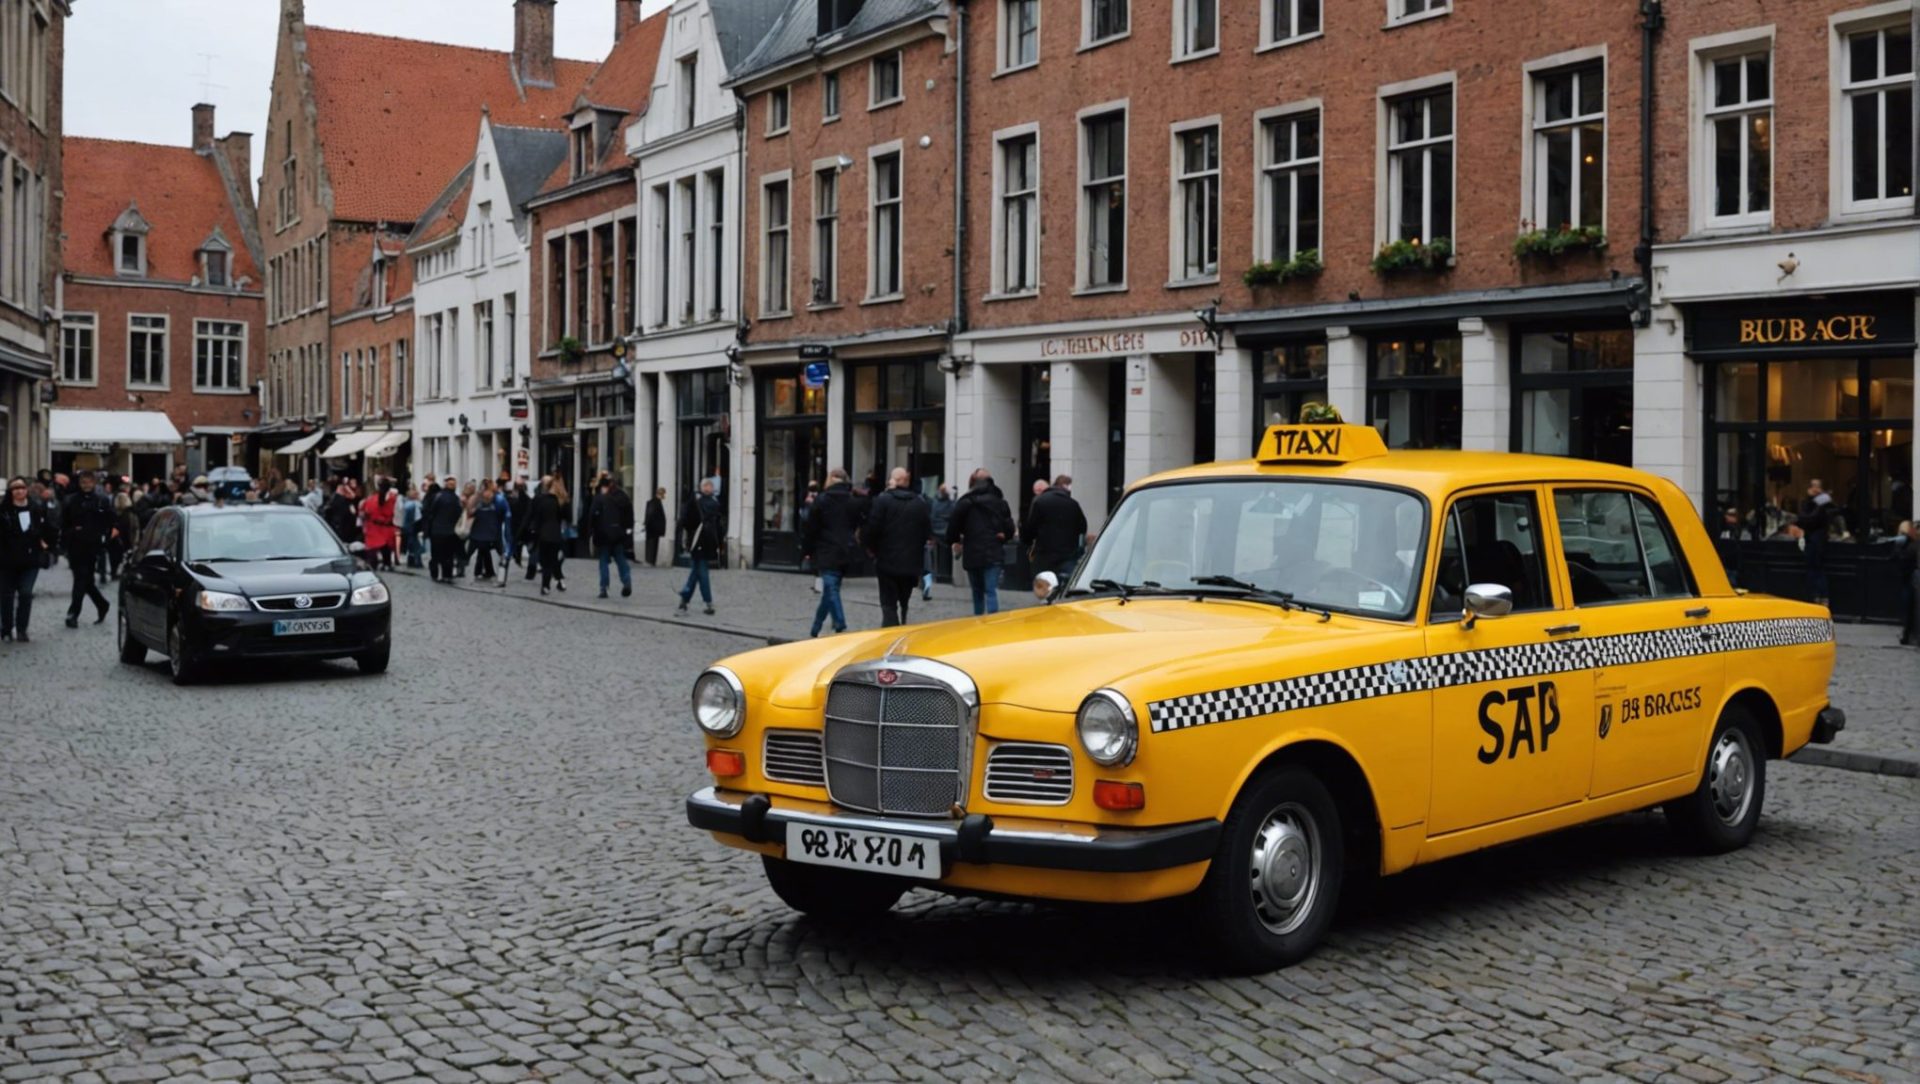 découvrez comment se déplacer en taxi à bruges et profitez d'un moyen pratique et confortable pour explorer la ville, avec les meilleurs conseils et recommandations.